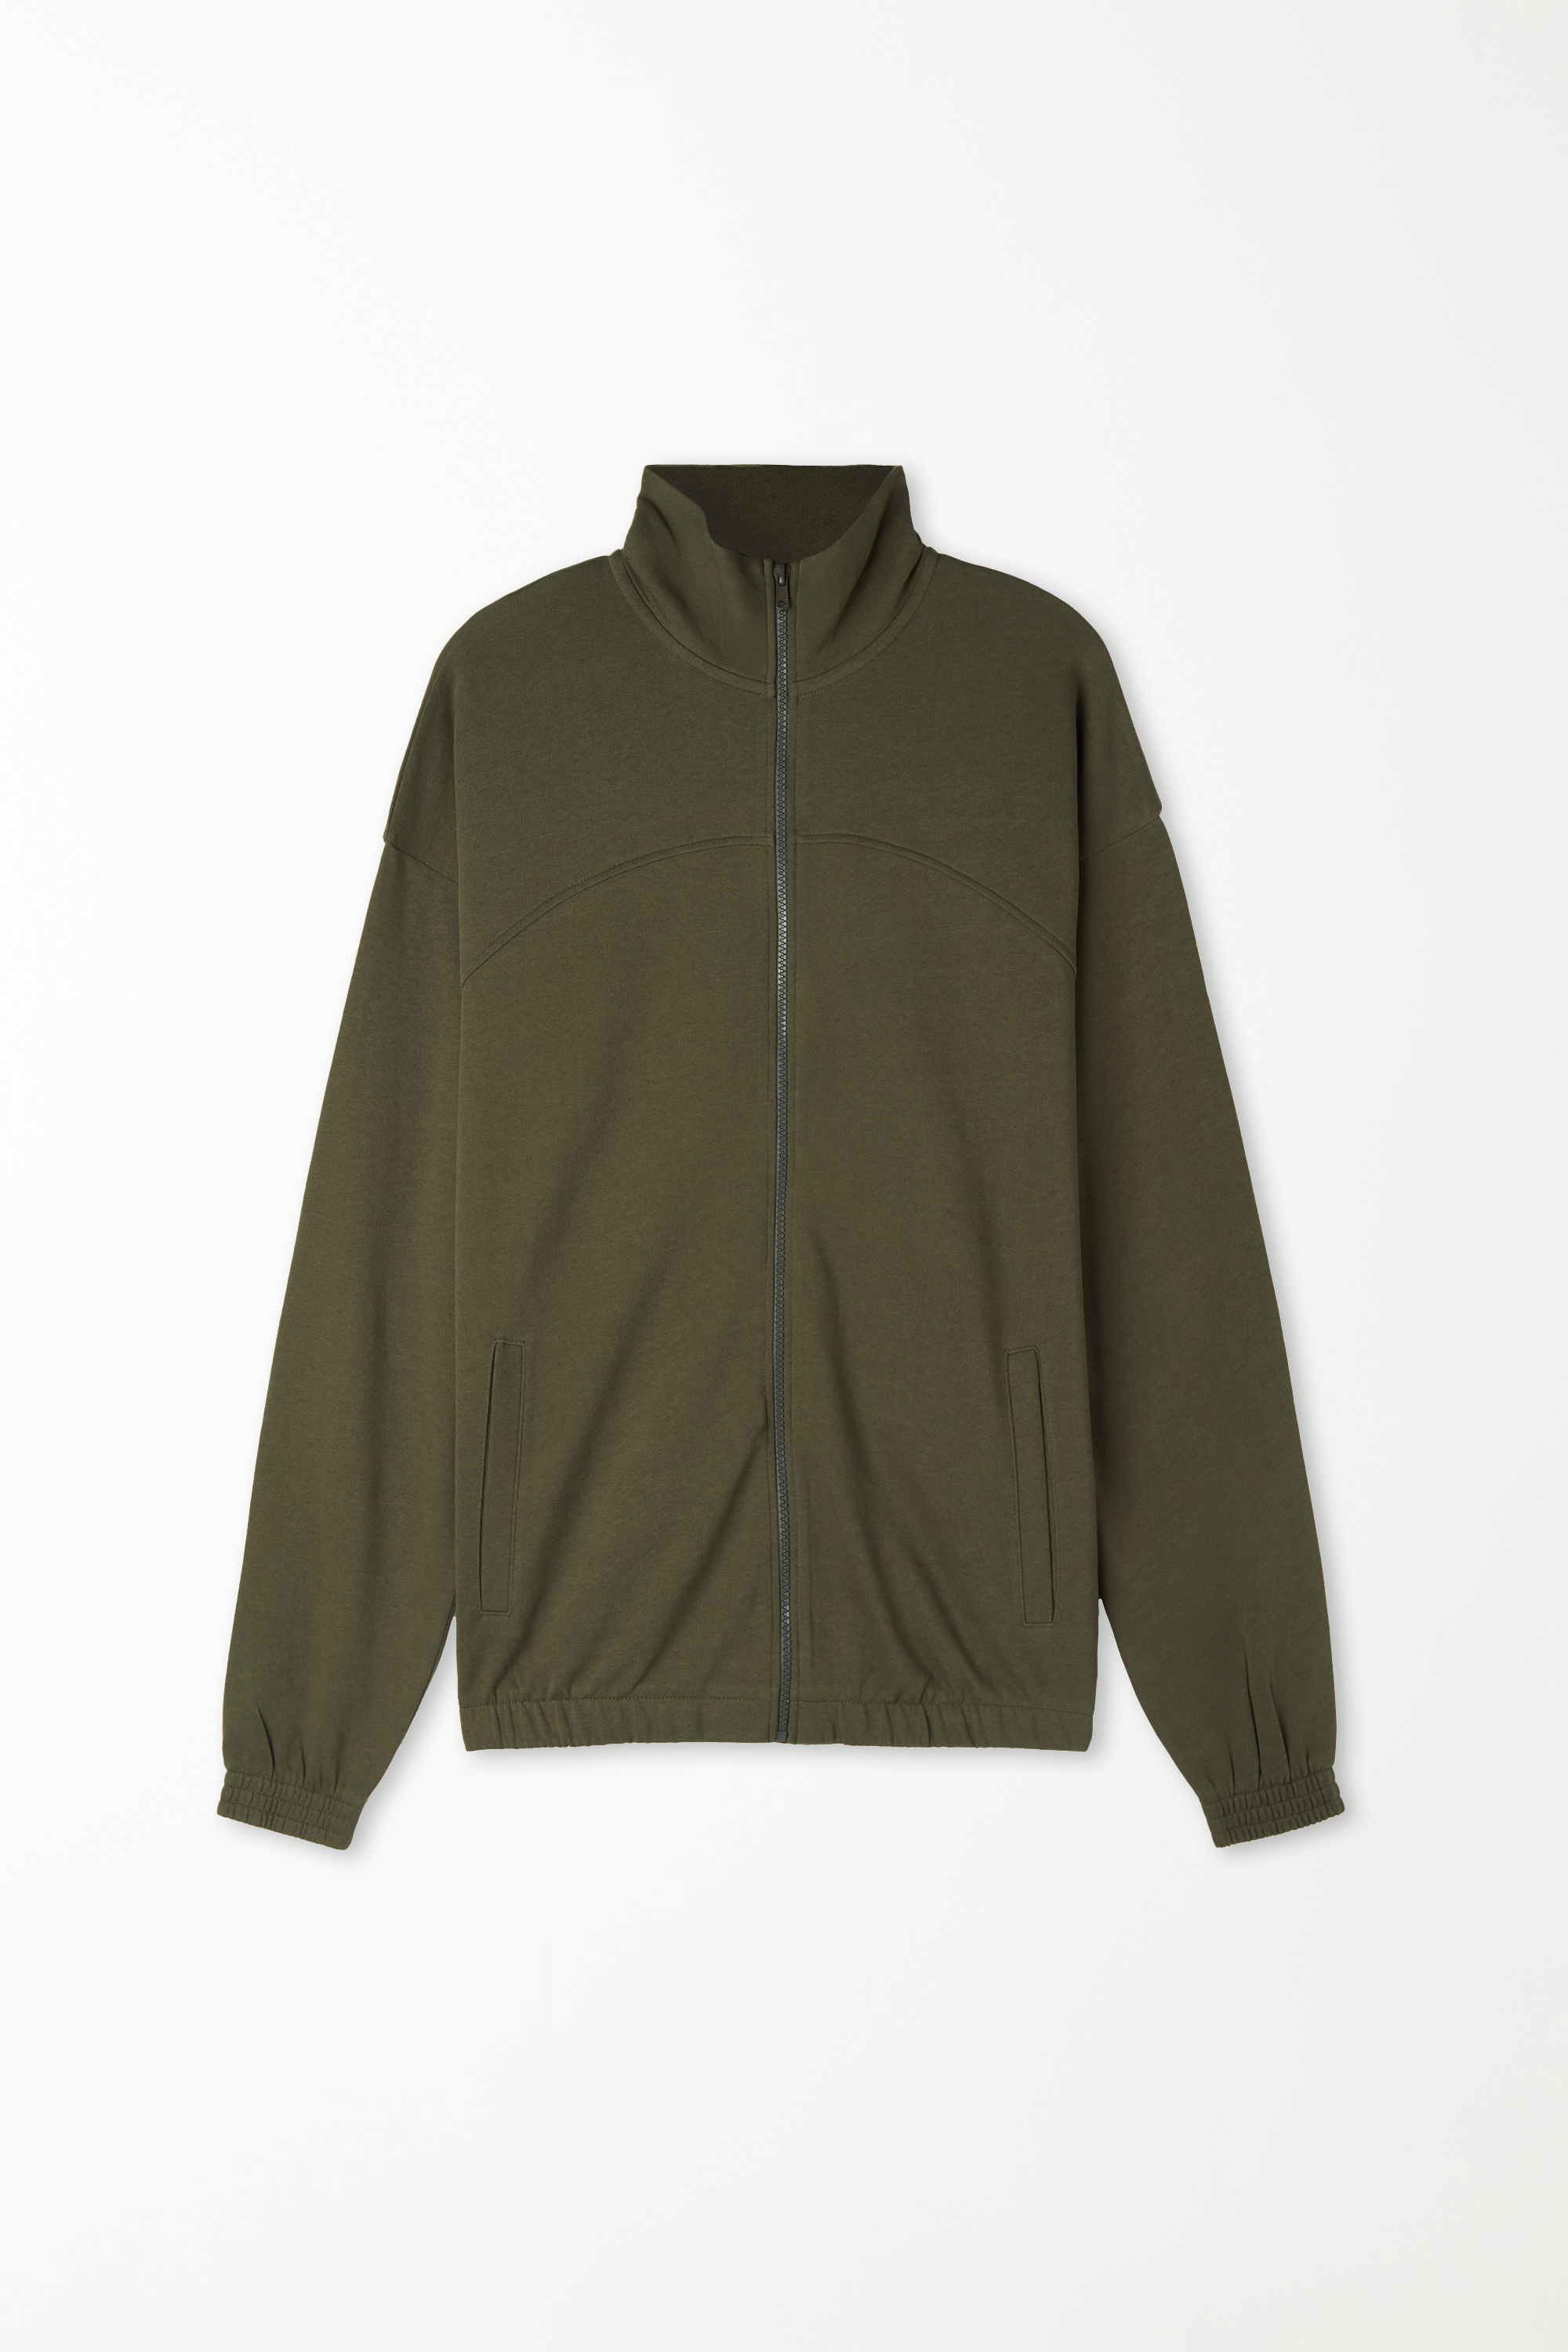 Basic Long Sleeve Pocket Zip Sweatshirt